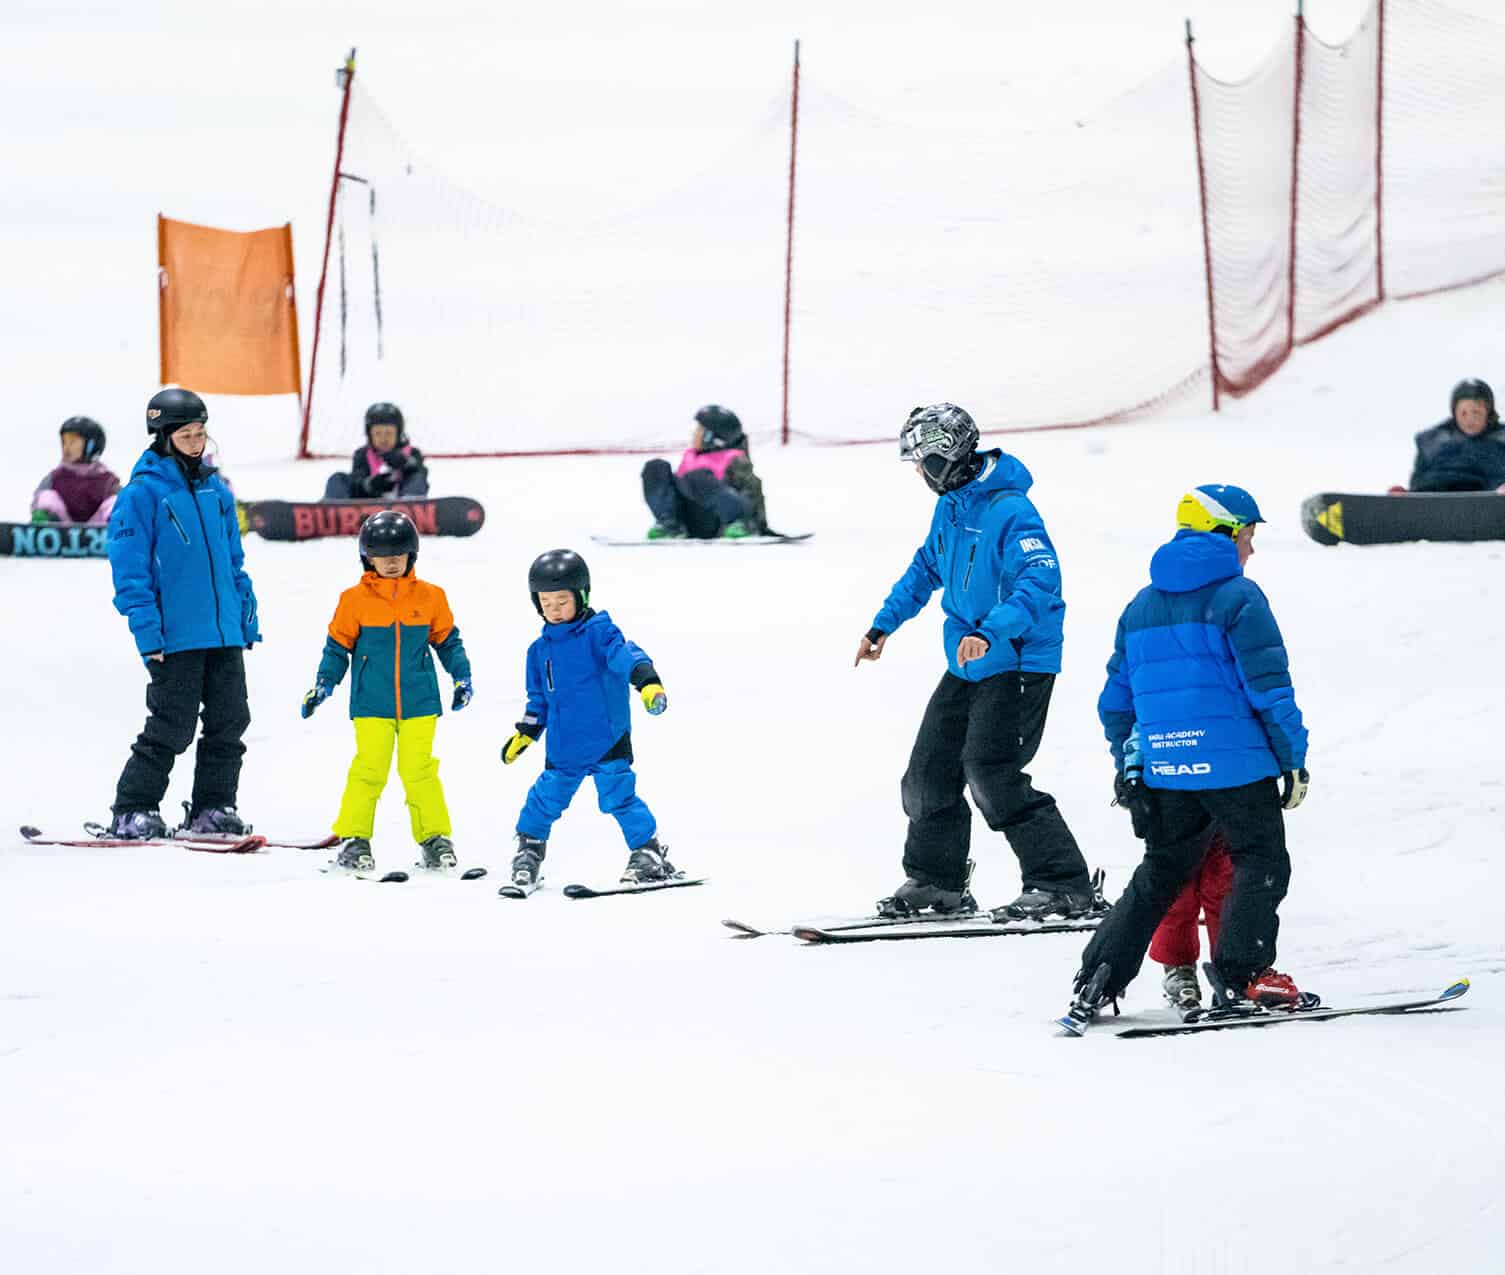 Kids having fun learning to ski at Snowplanet